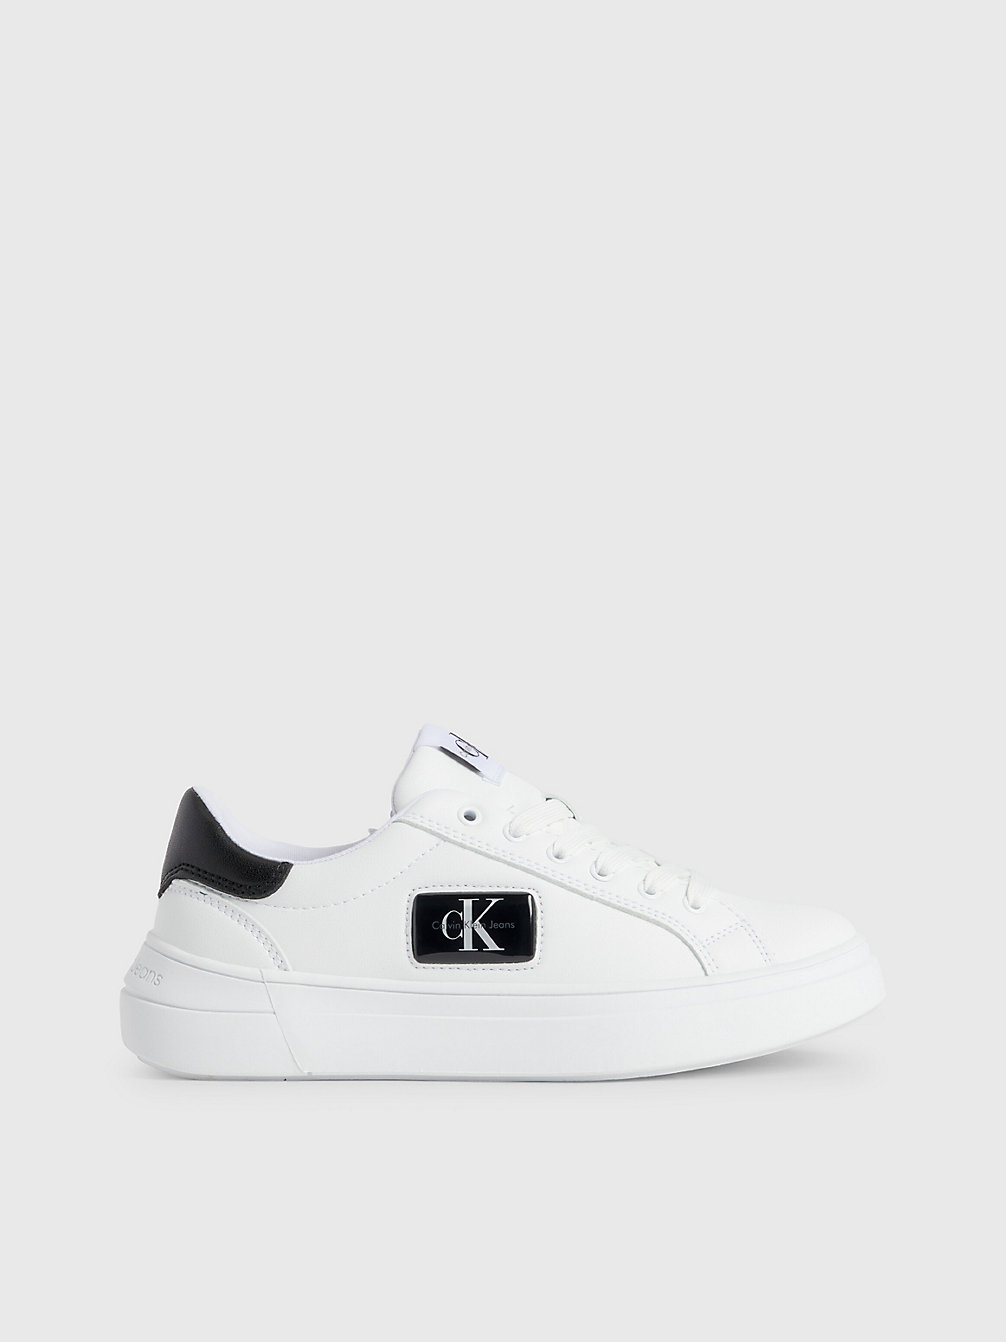 WHITE / BLACK Recycelte Sneakers Für Kinder undefined kids unisex Calvin Klein